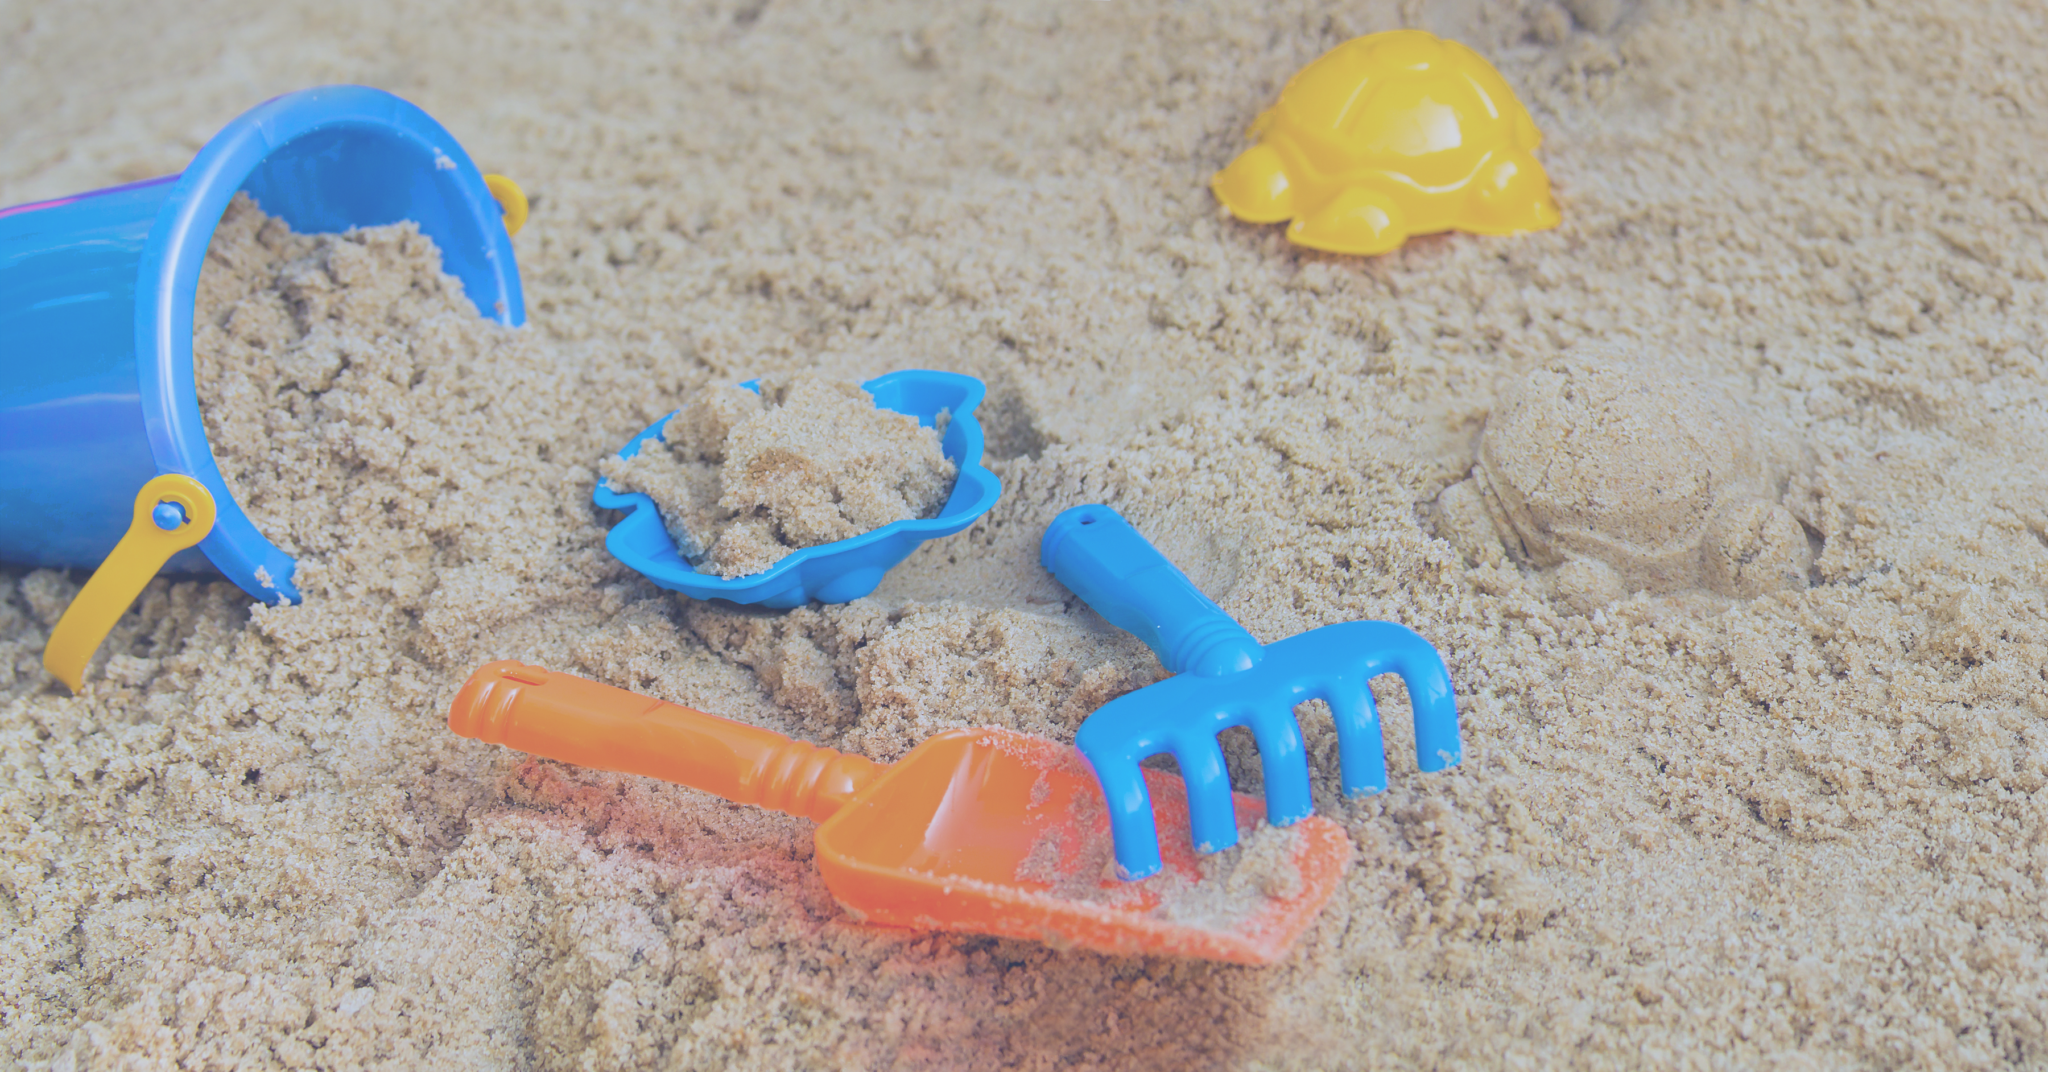 Children's bucket and other toys sitting in a sandbox - Votiro